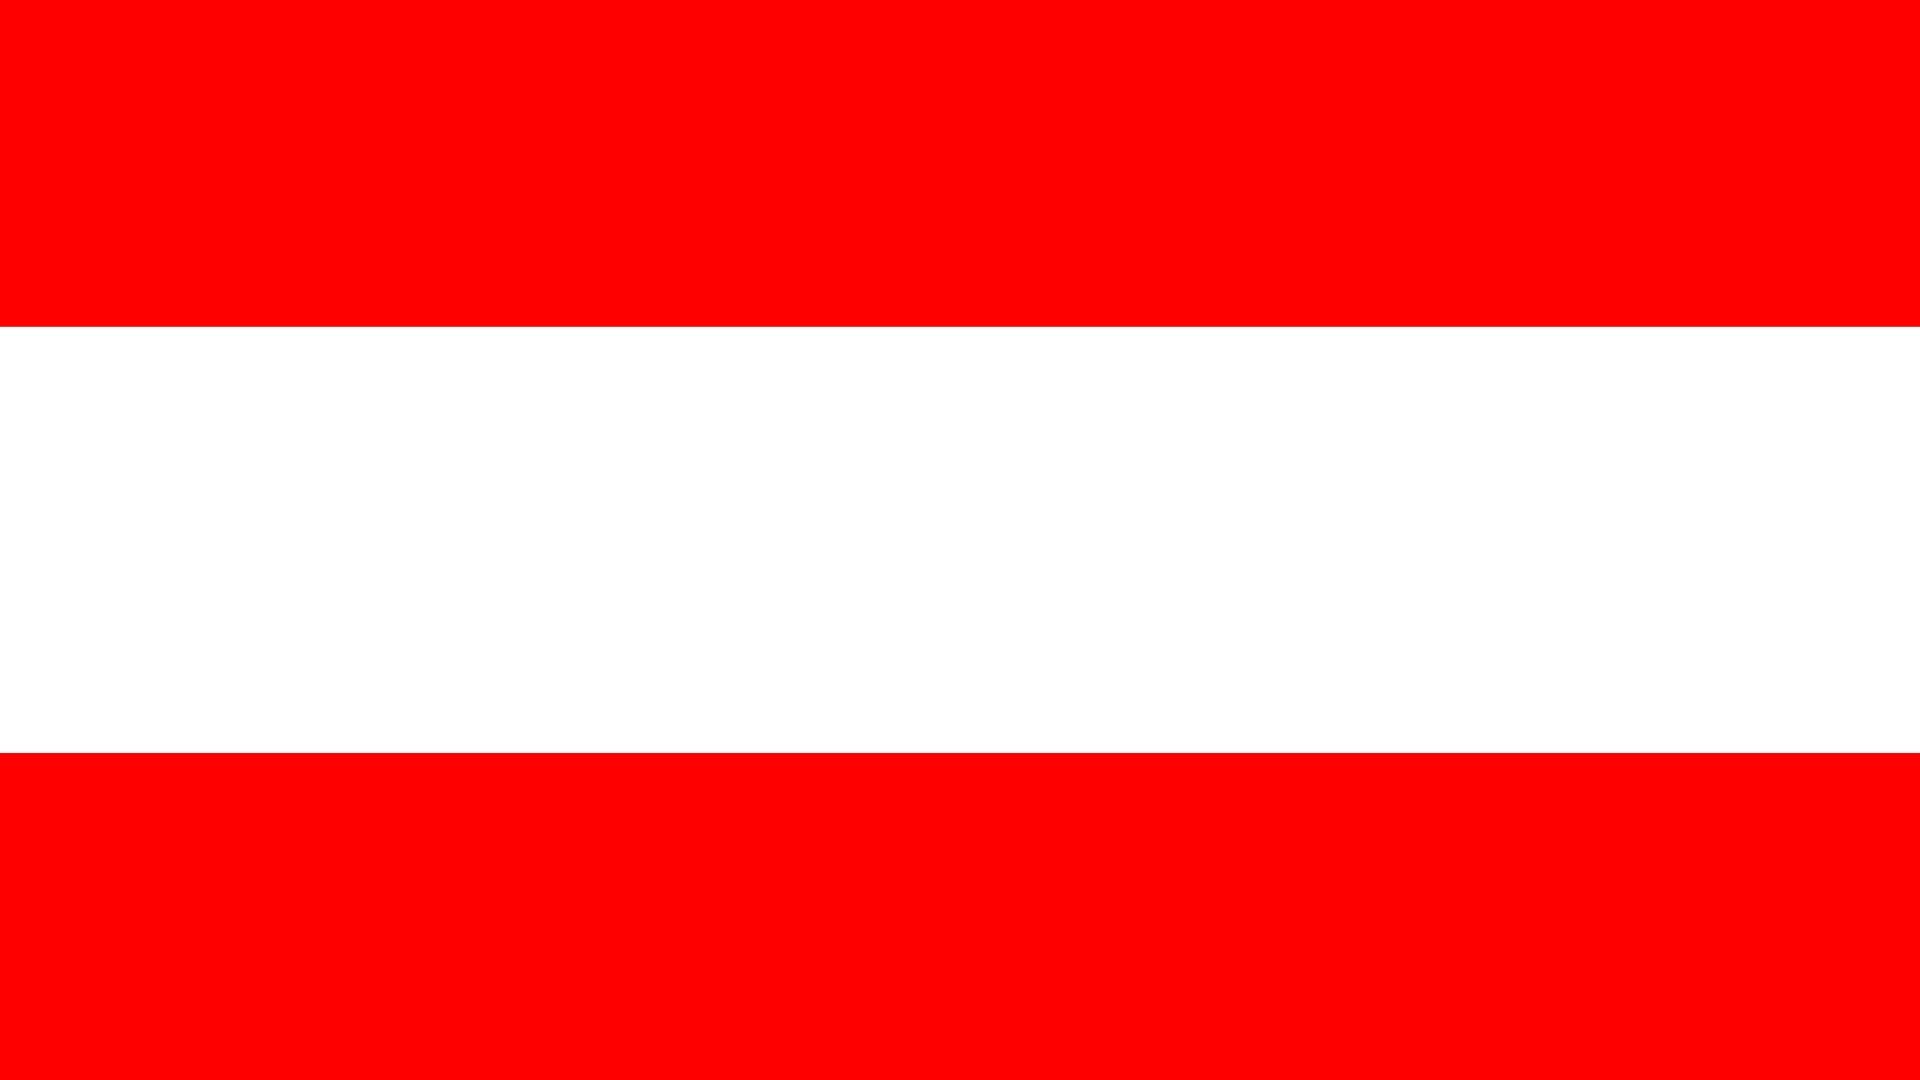 A bandeira da Áustria é uma bandeira formada por três partes horizontais de igual proporção, sendo as exteriores de cor vermelha e a central de cor branca. À bandeira é acrescentado o escudo nacional no centro.